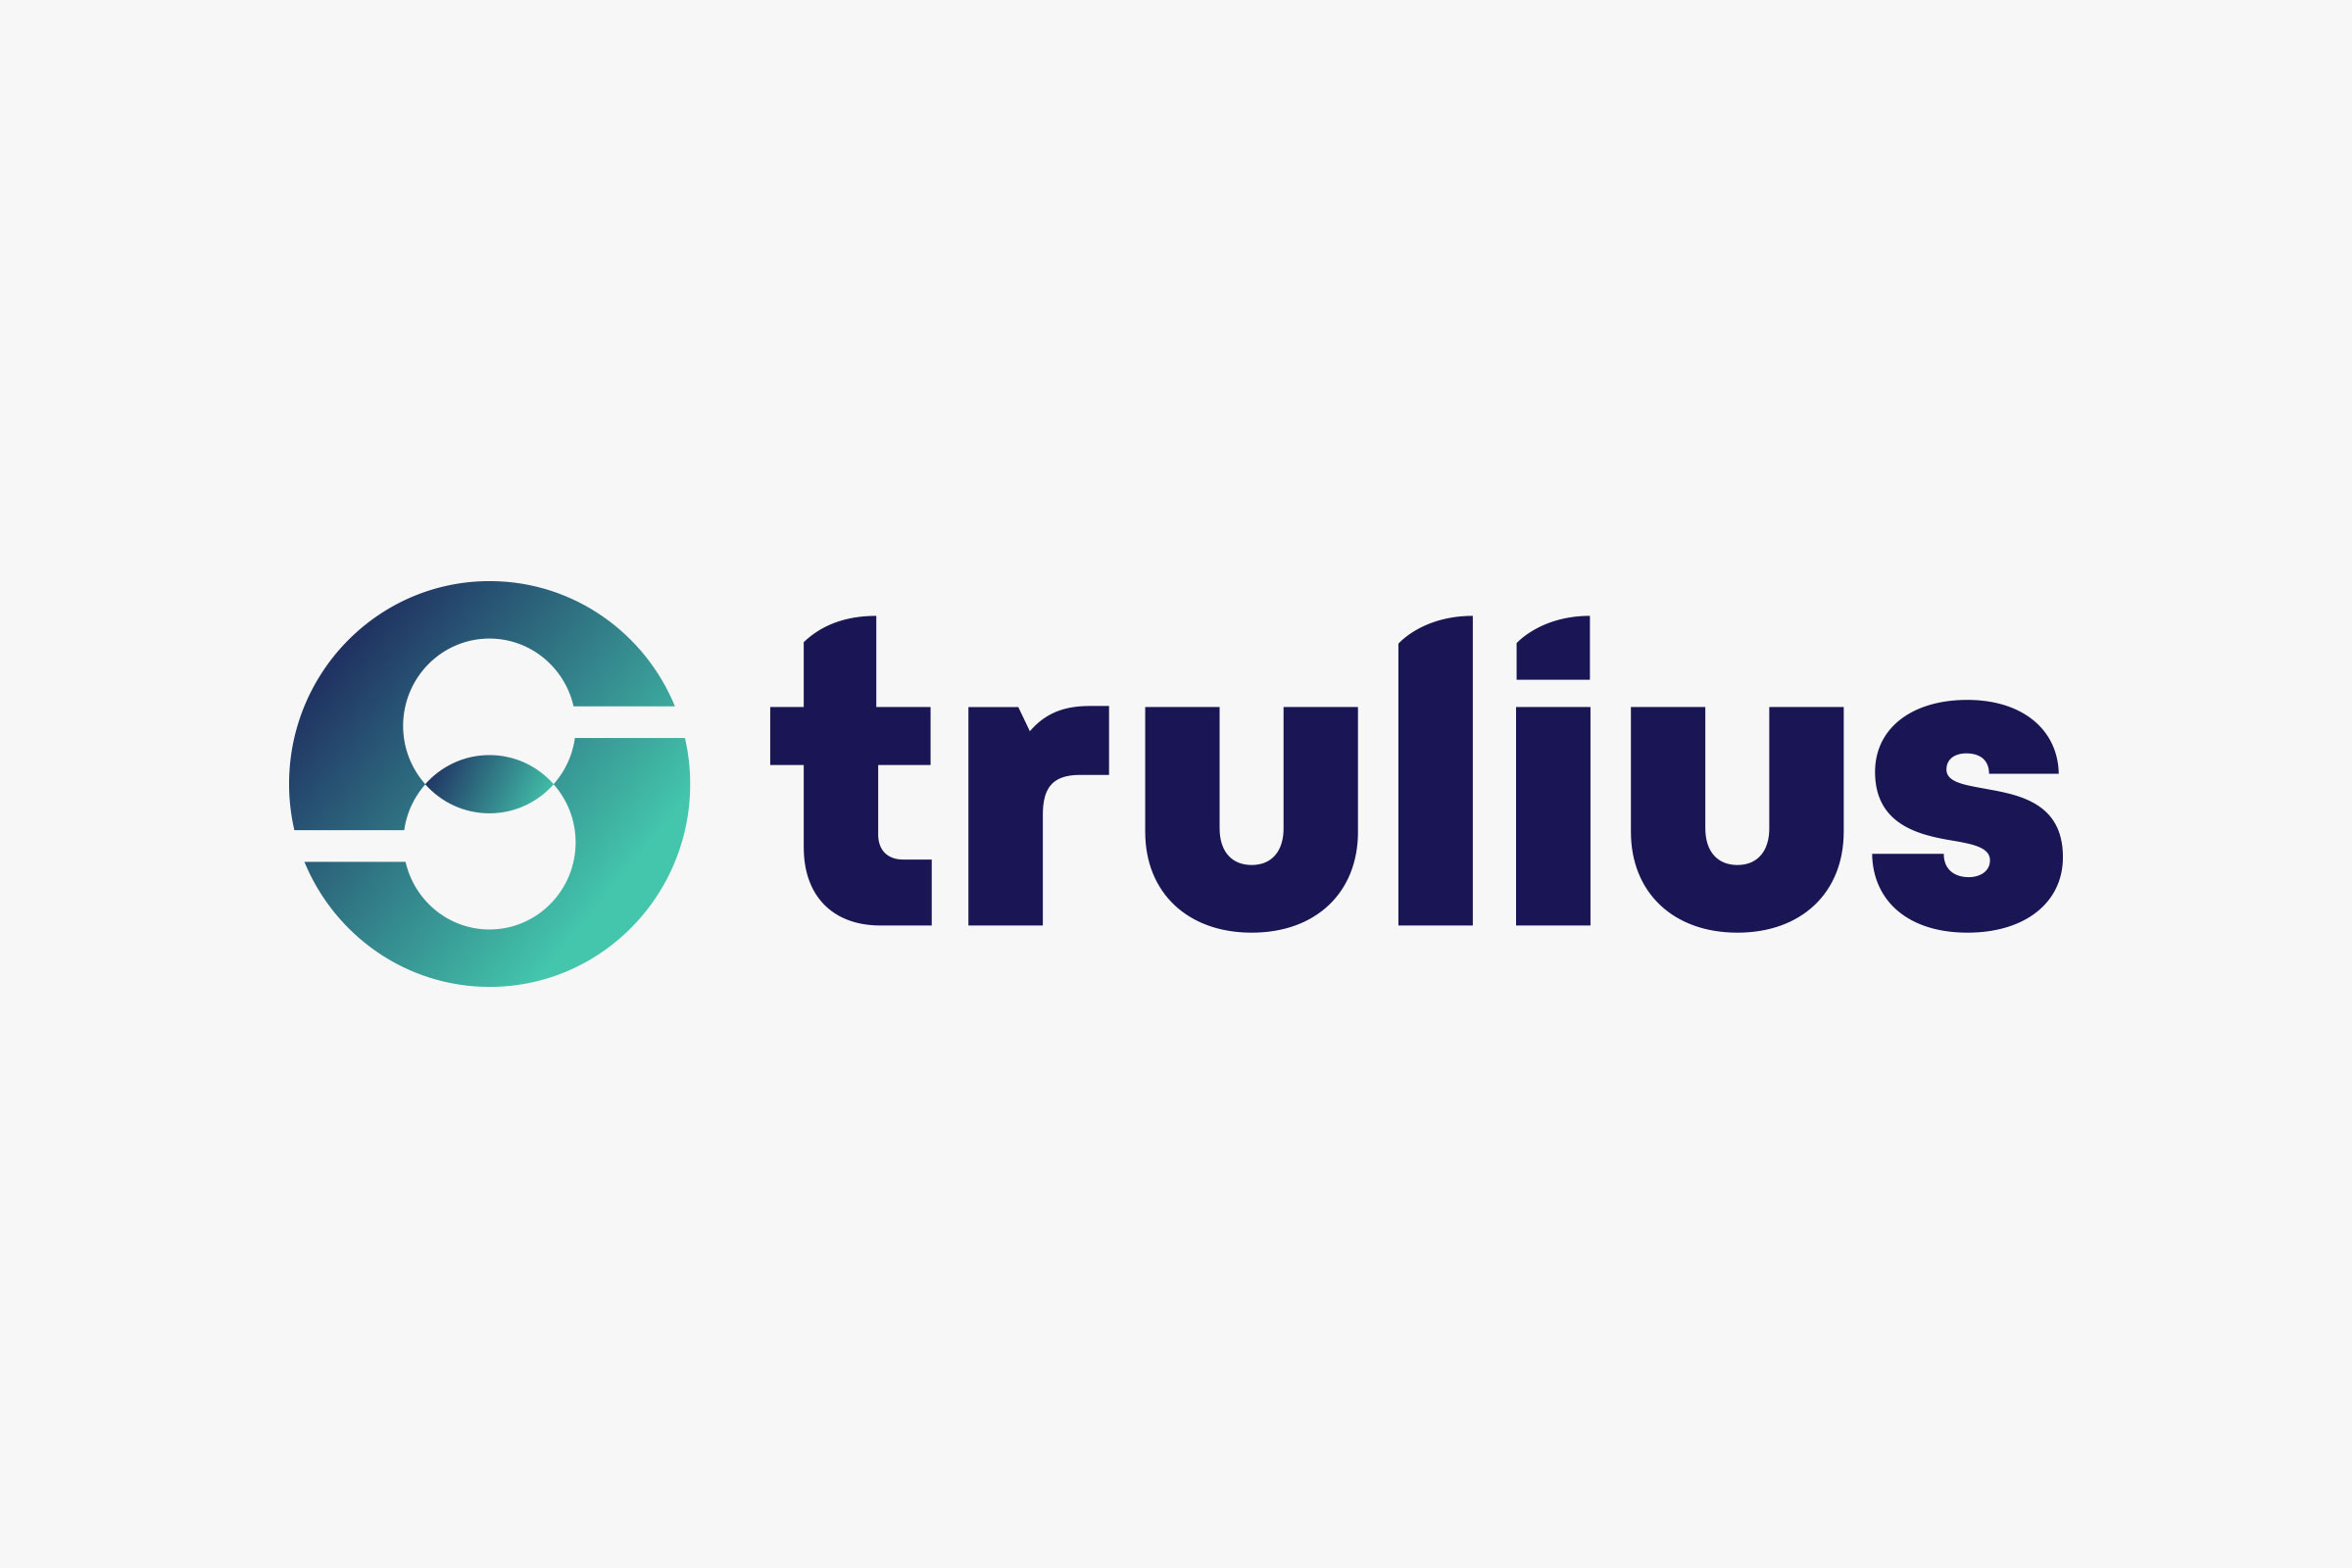 Trulius — Branding